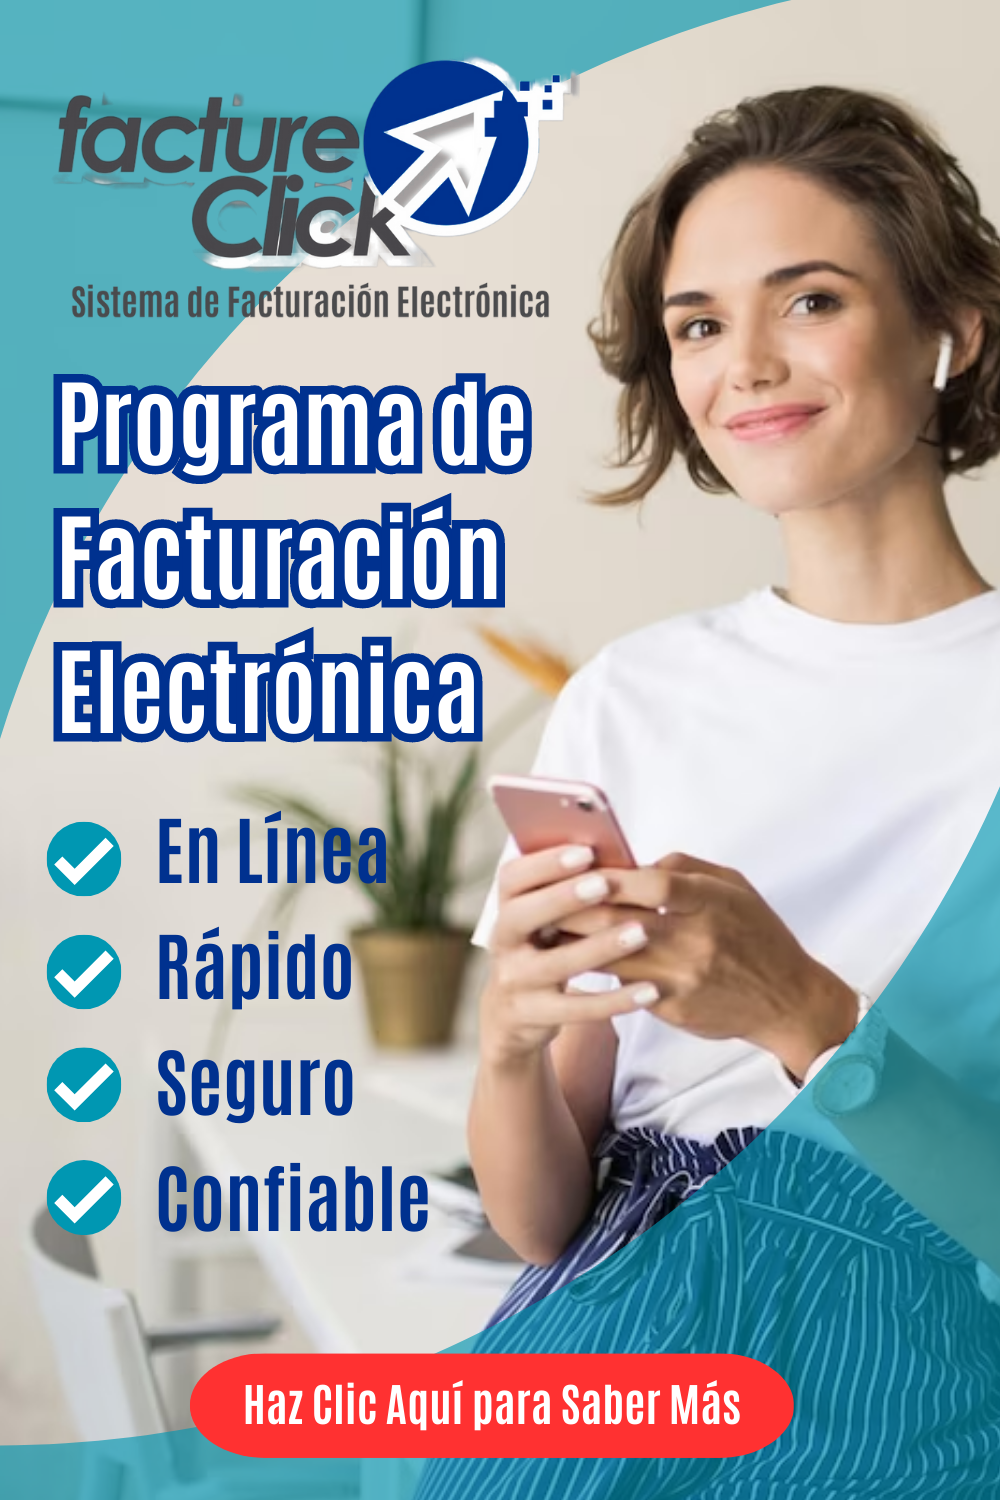 Sistema-de-facturacion-electronica-sistema-de-facturacion-facturacion-electronica-en-linea-13.png